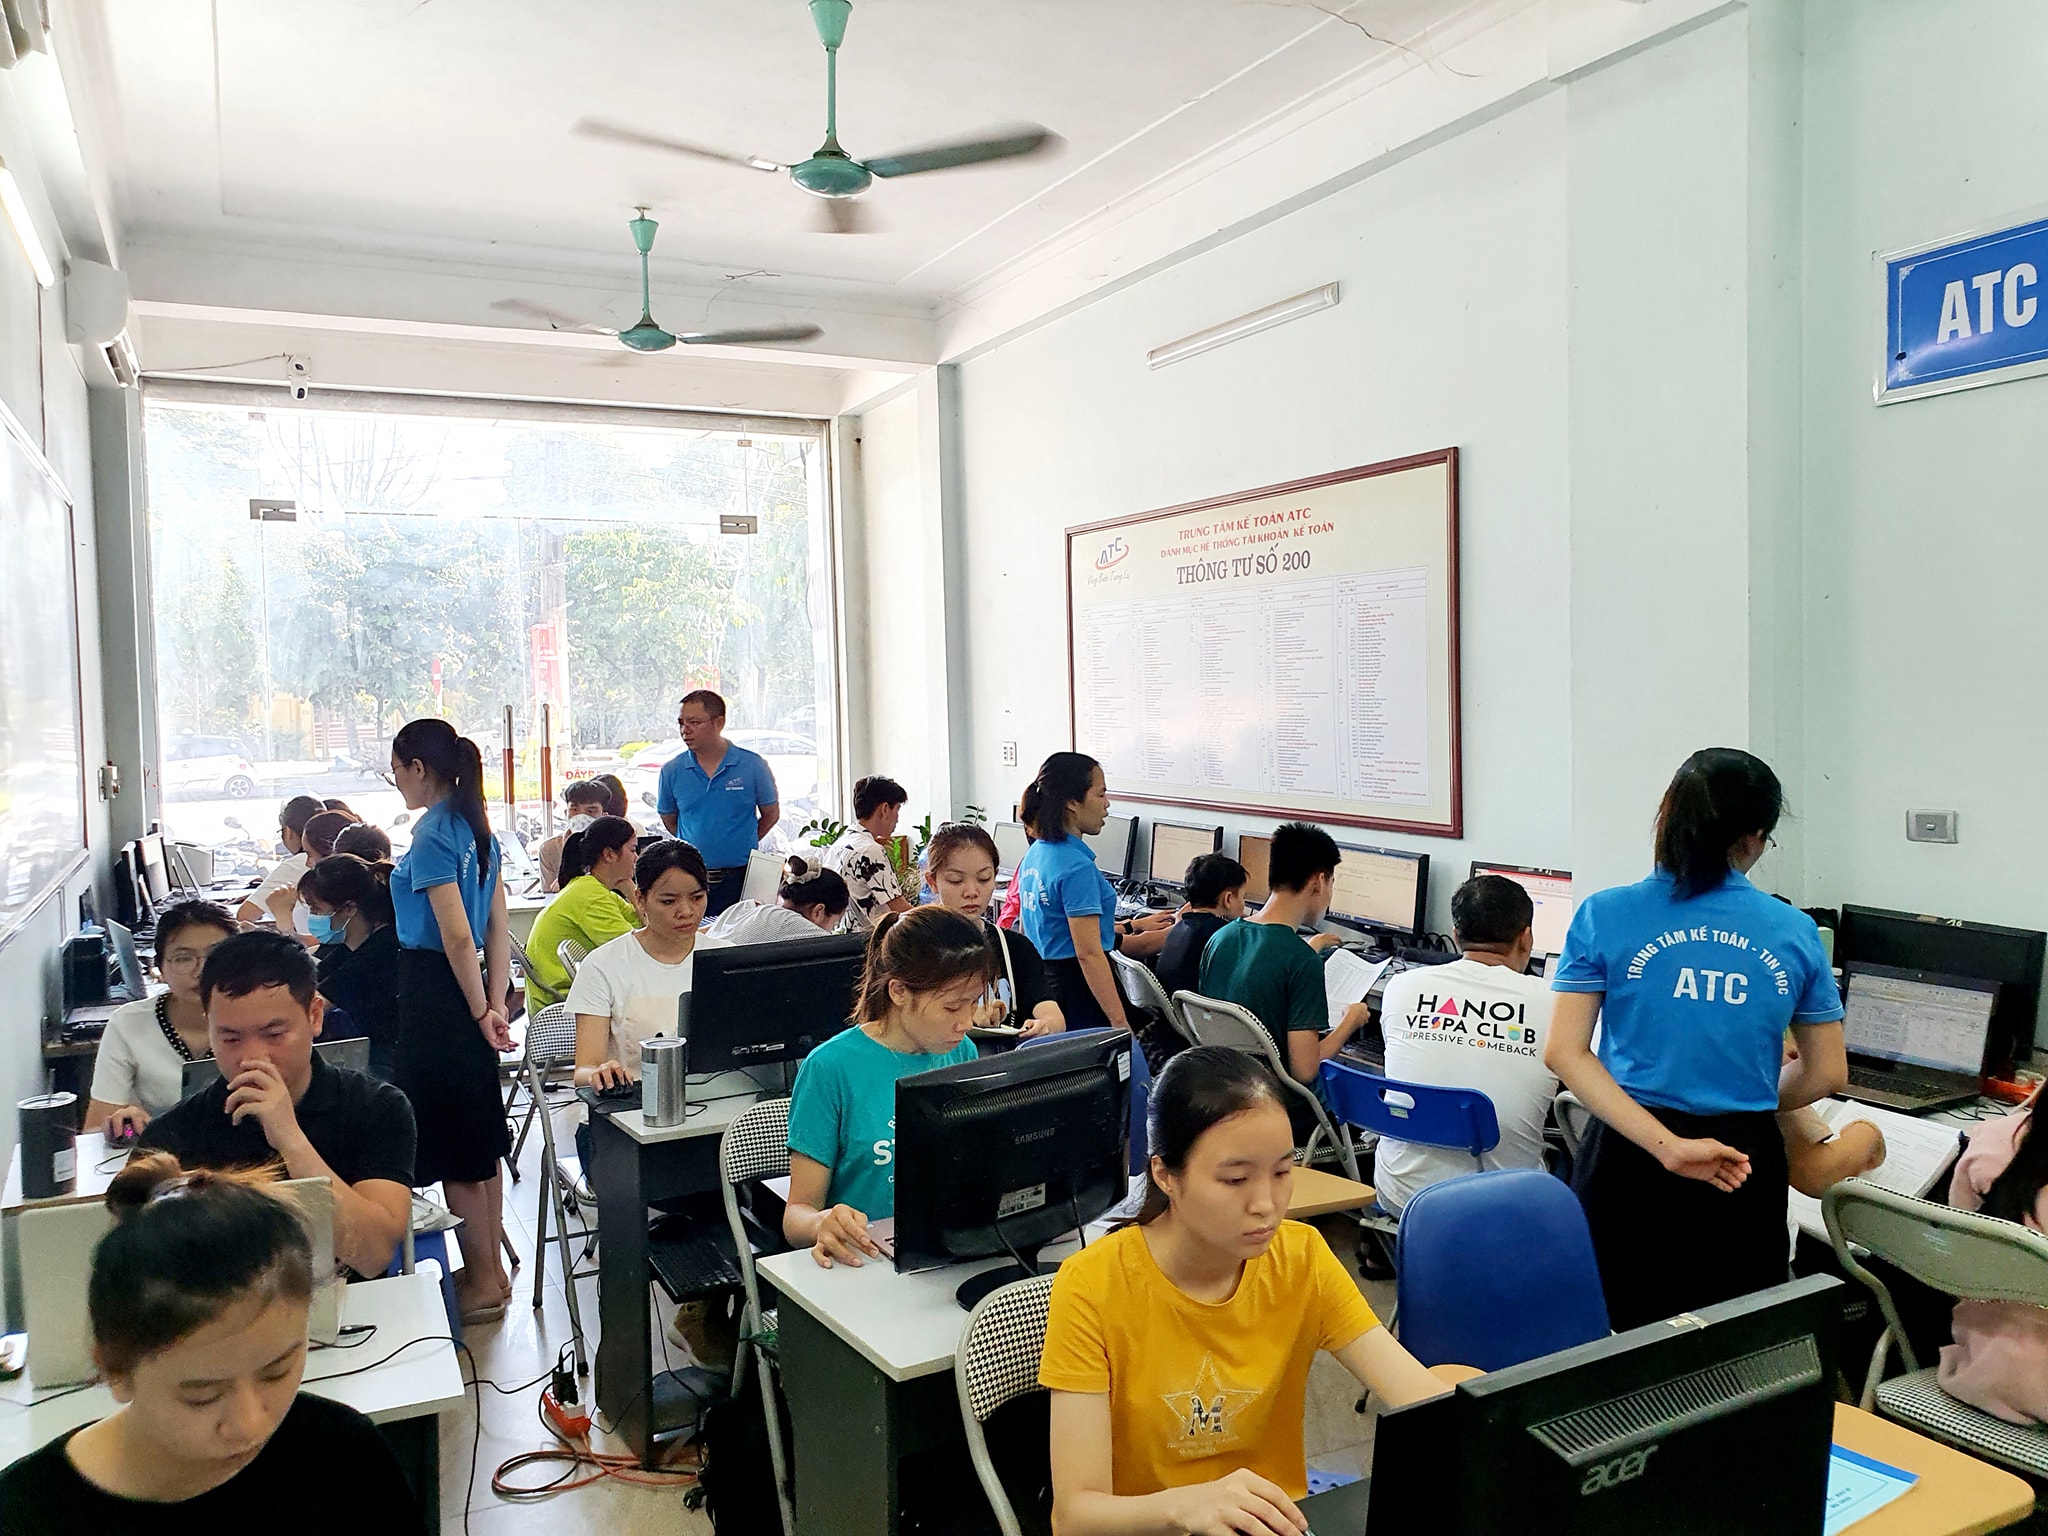 Đào tạo kế toán ở Thanh Hóa Trước mình học ở ATC, ở đây dạy theo kiểu cầm tay chỉ việc nên không có kinh nghiệm cũng học được, làm được.